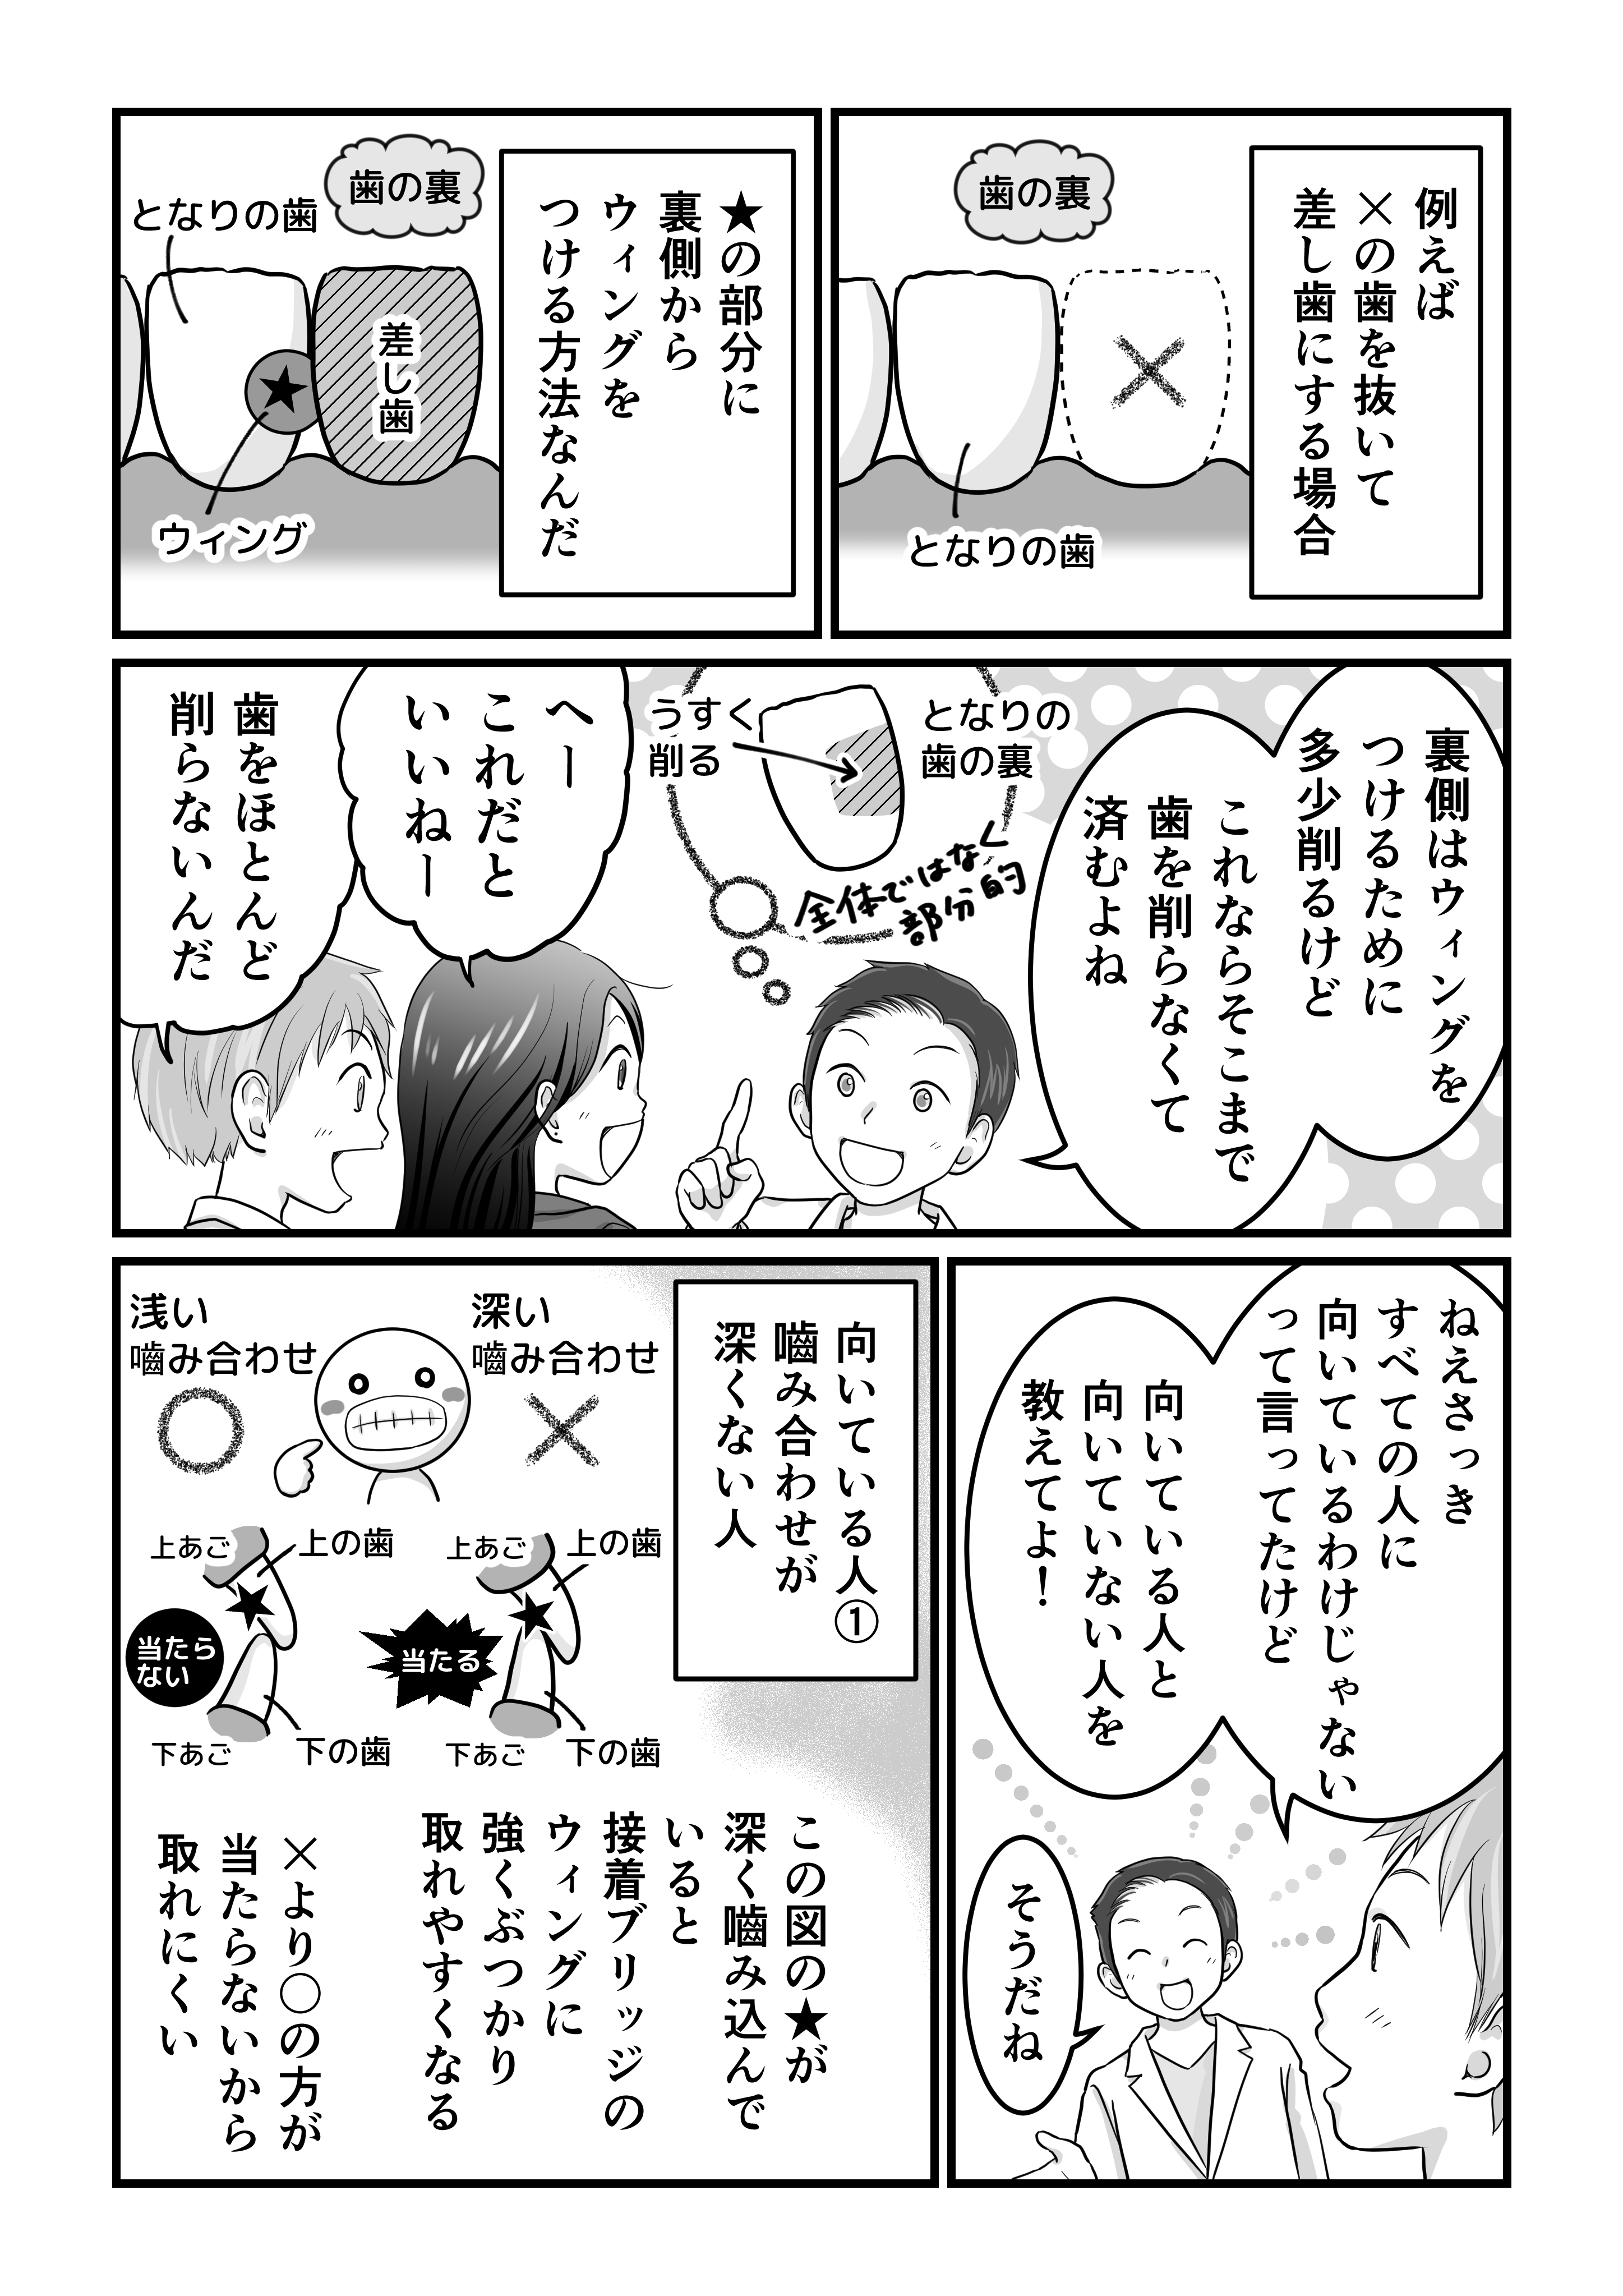 田島様歯科漫画（確認用低画質）_004